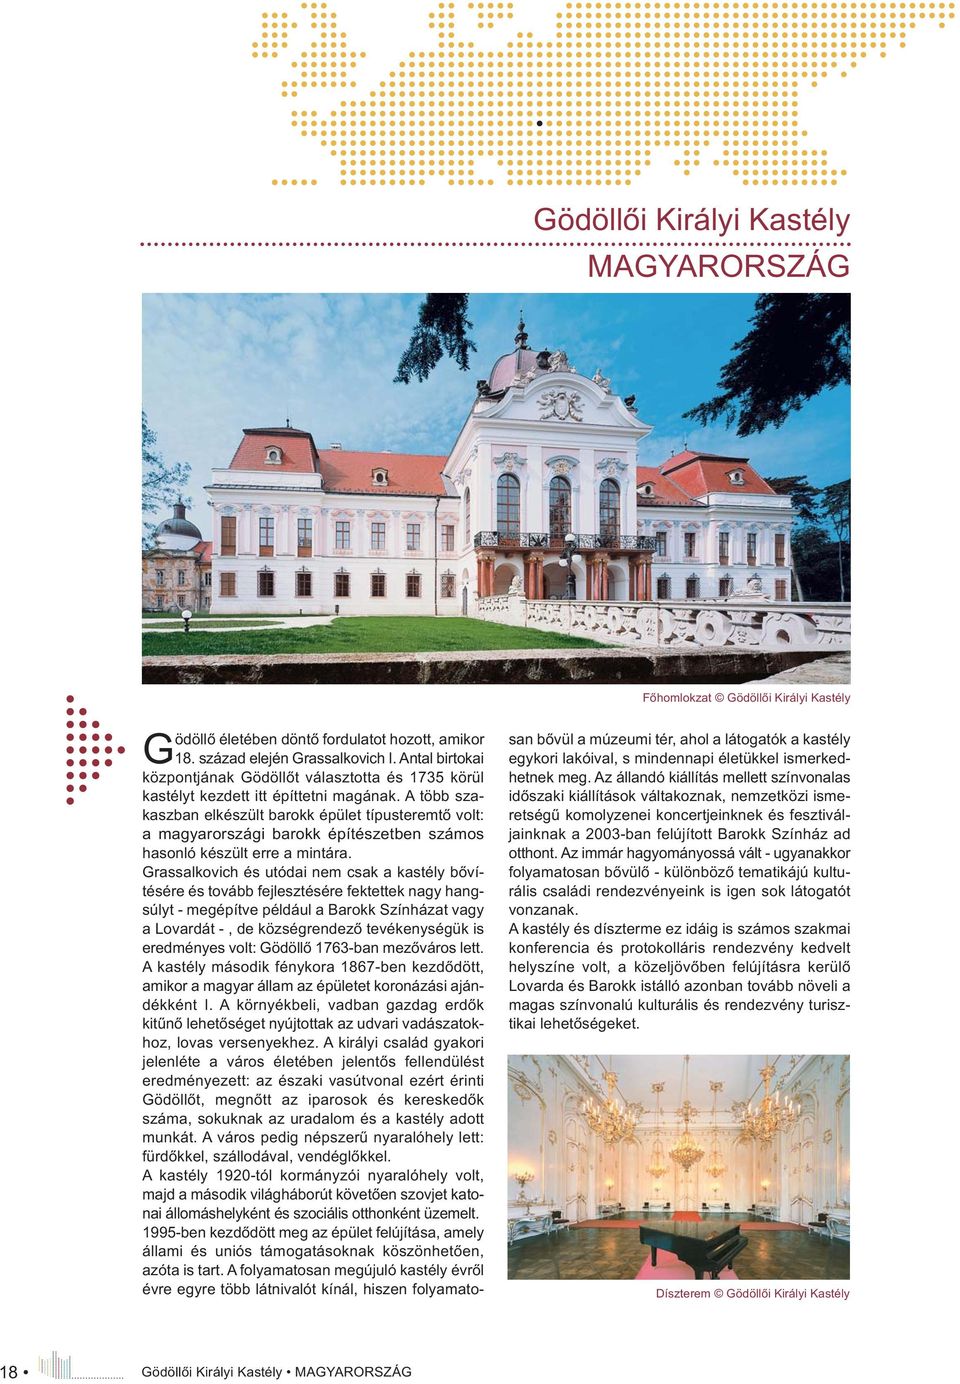 A több szakaszban elkészült barokk épület típusteremtő volt: a magyarországi barokk építészetben számos hasonló készült erre a mintára.